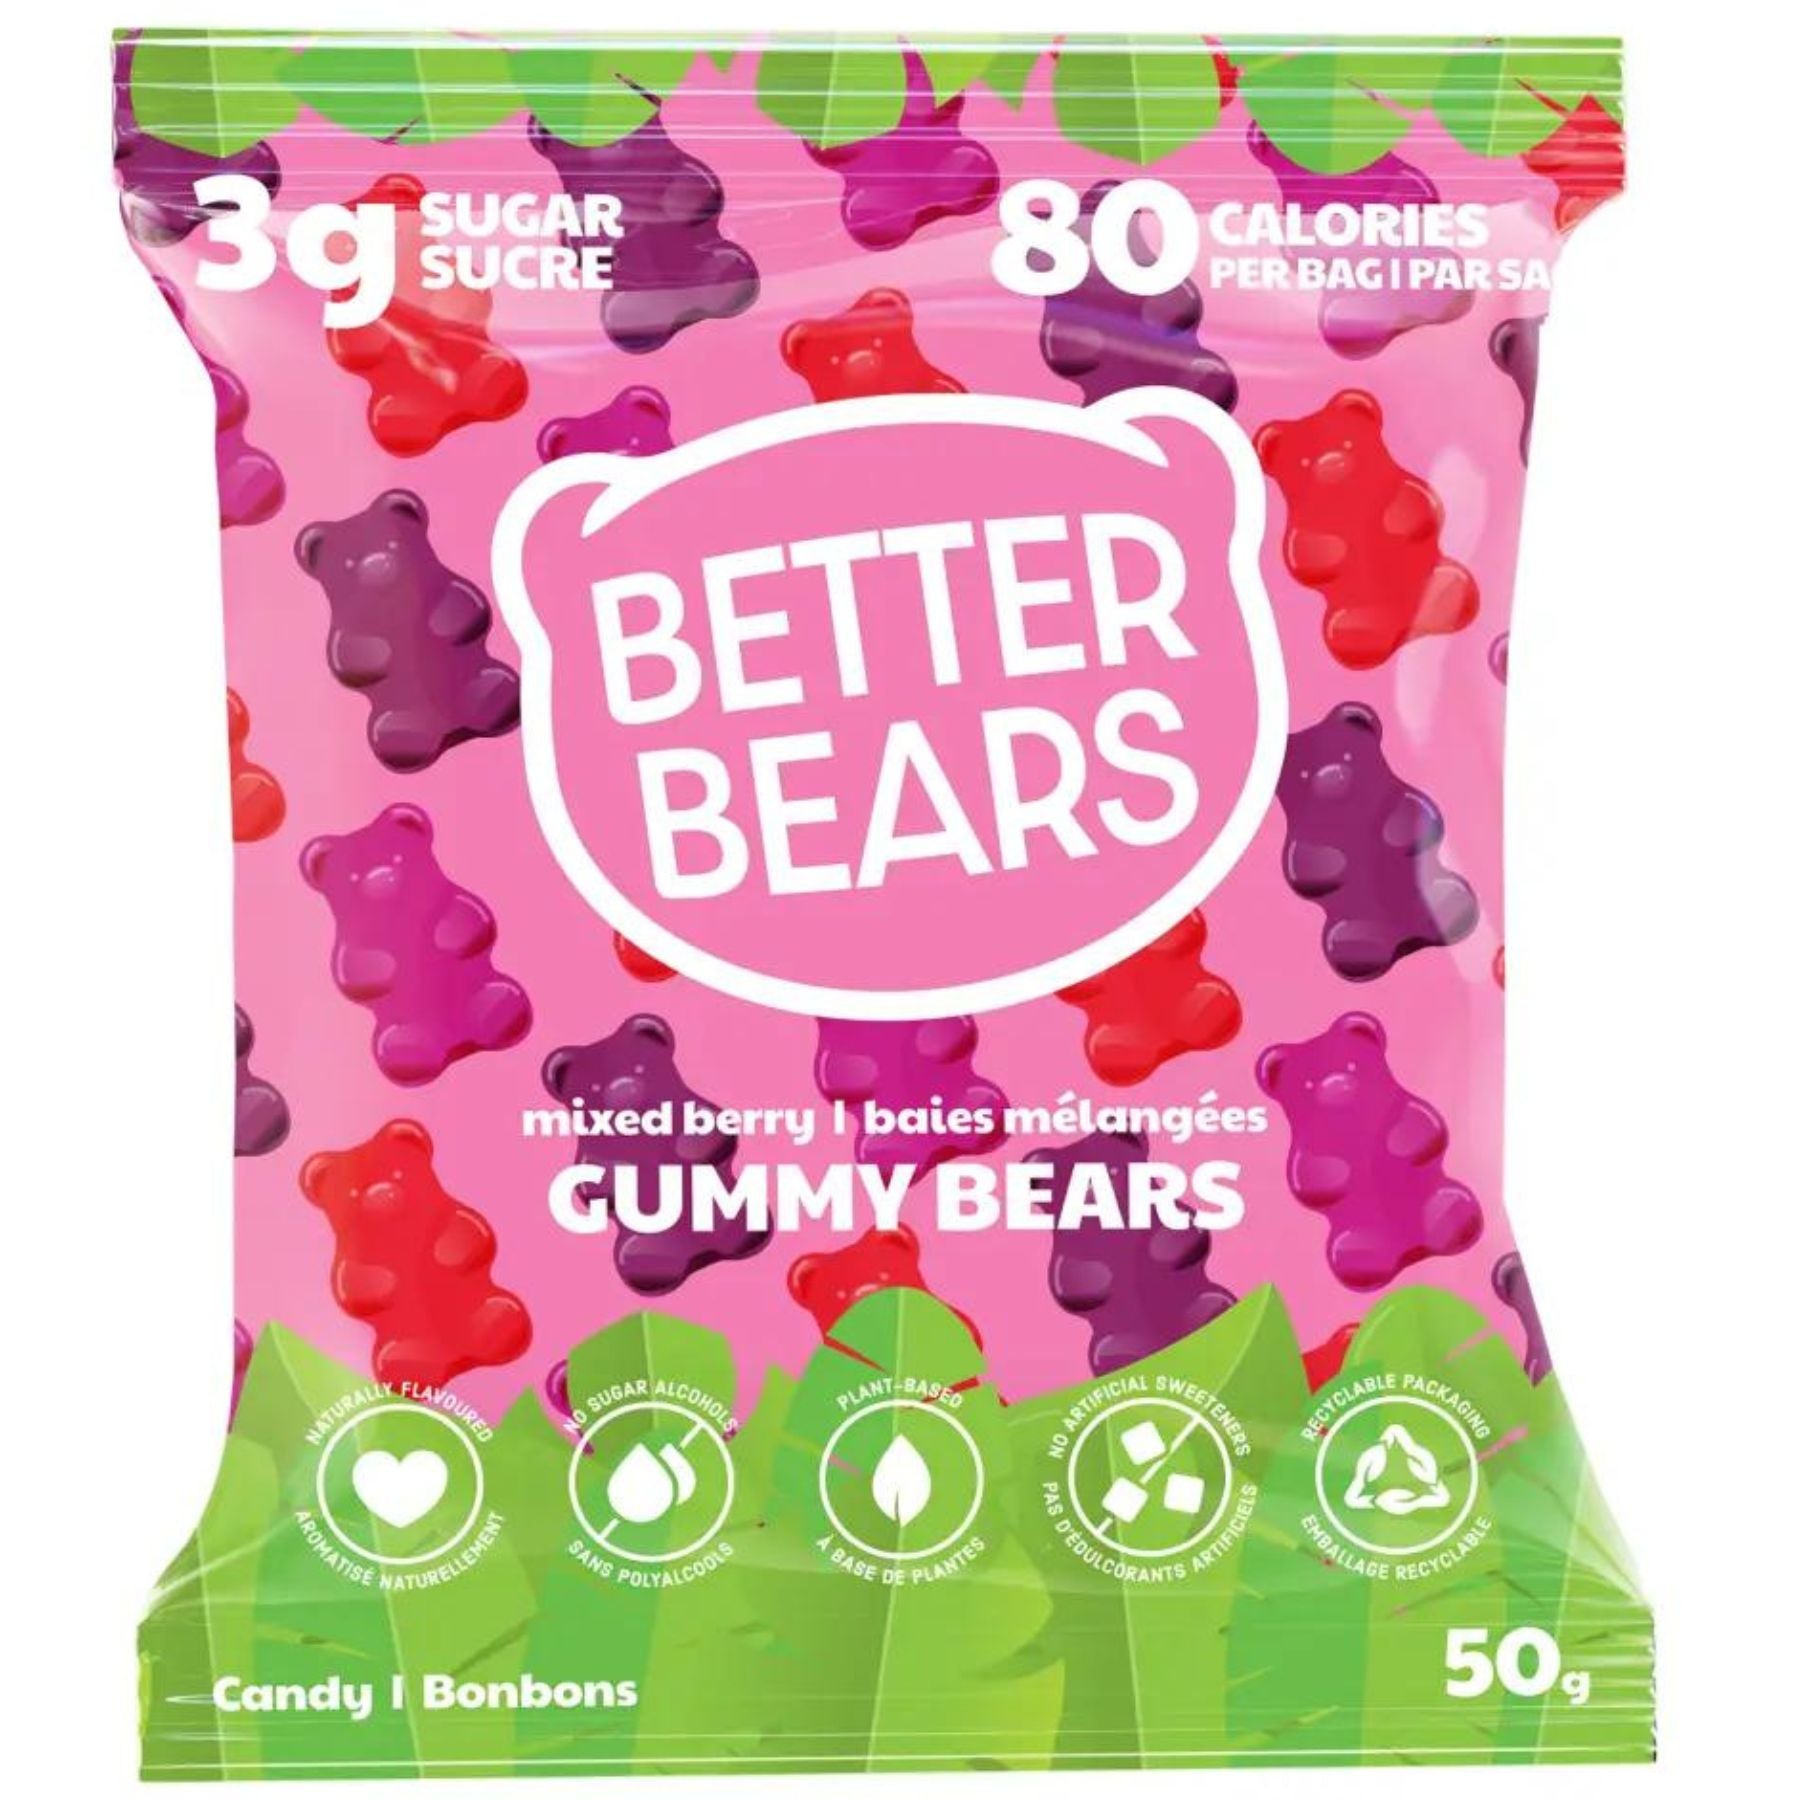 Better Bears Mixed Berry Gummy Bears 50g